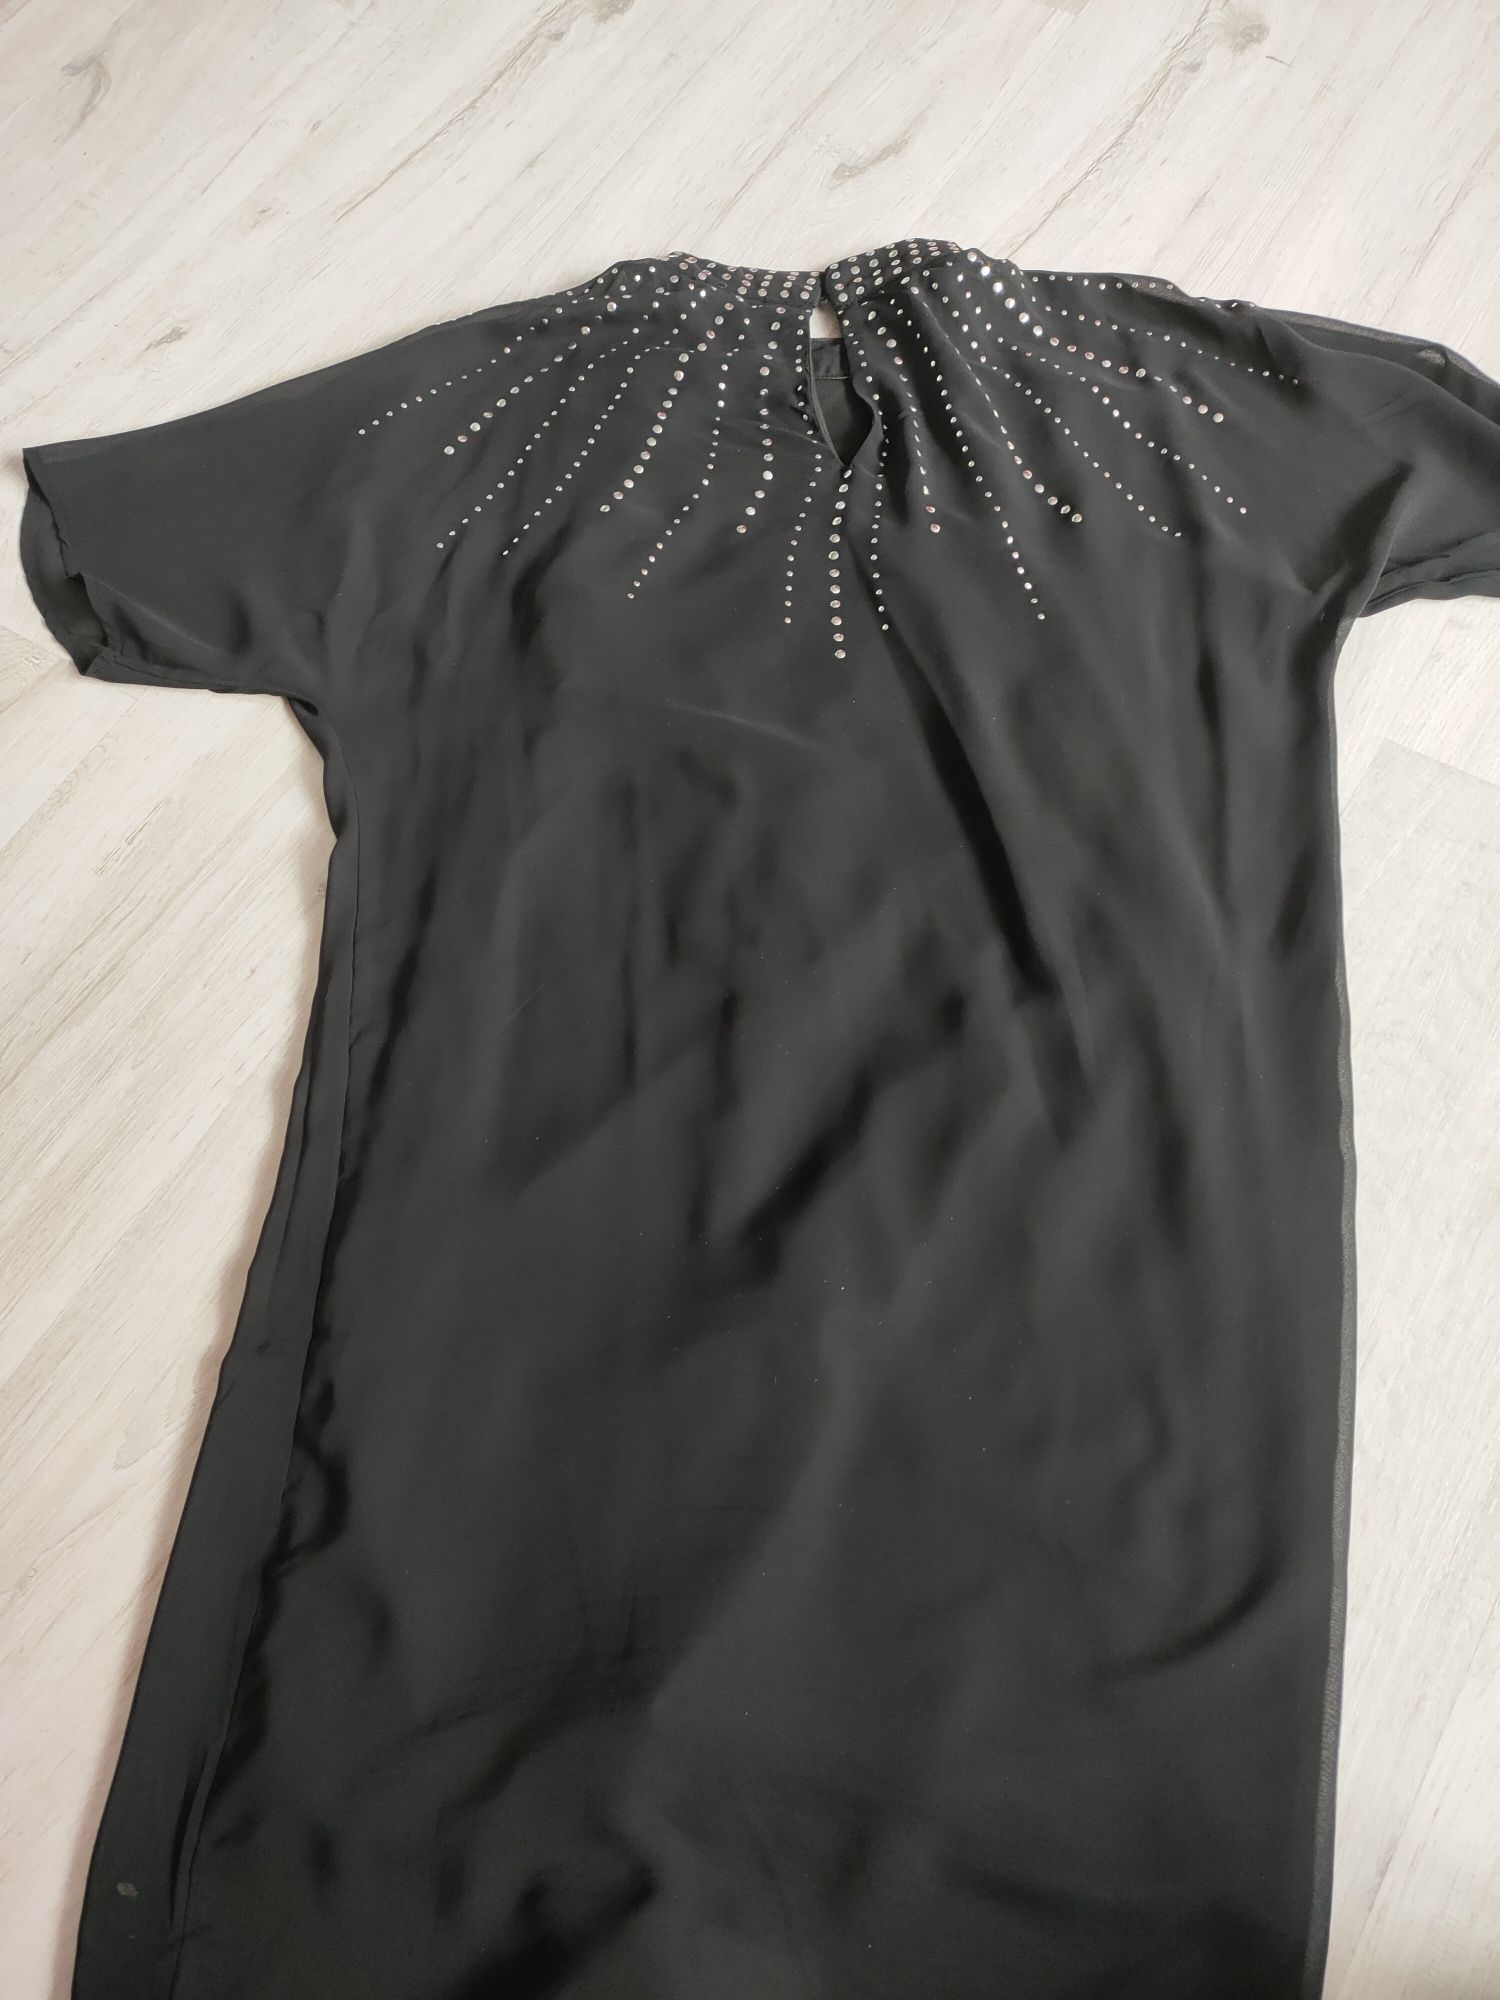 Sukienka/tunika czarna zdobiona